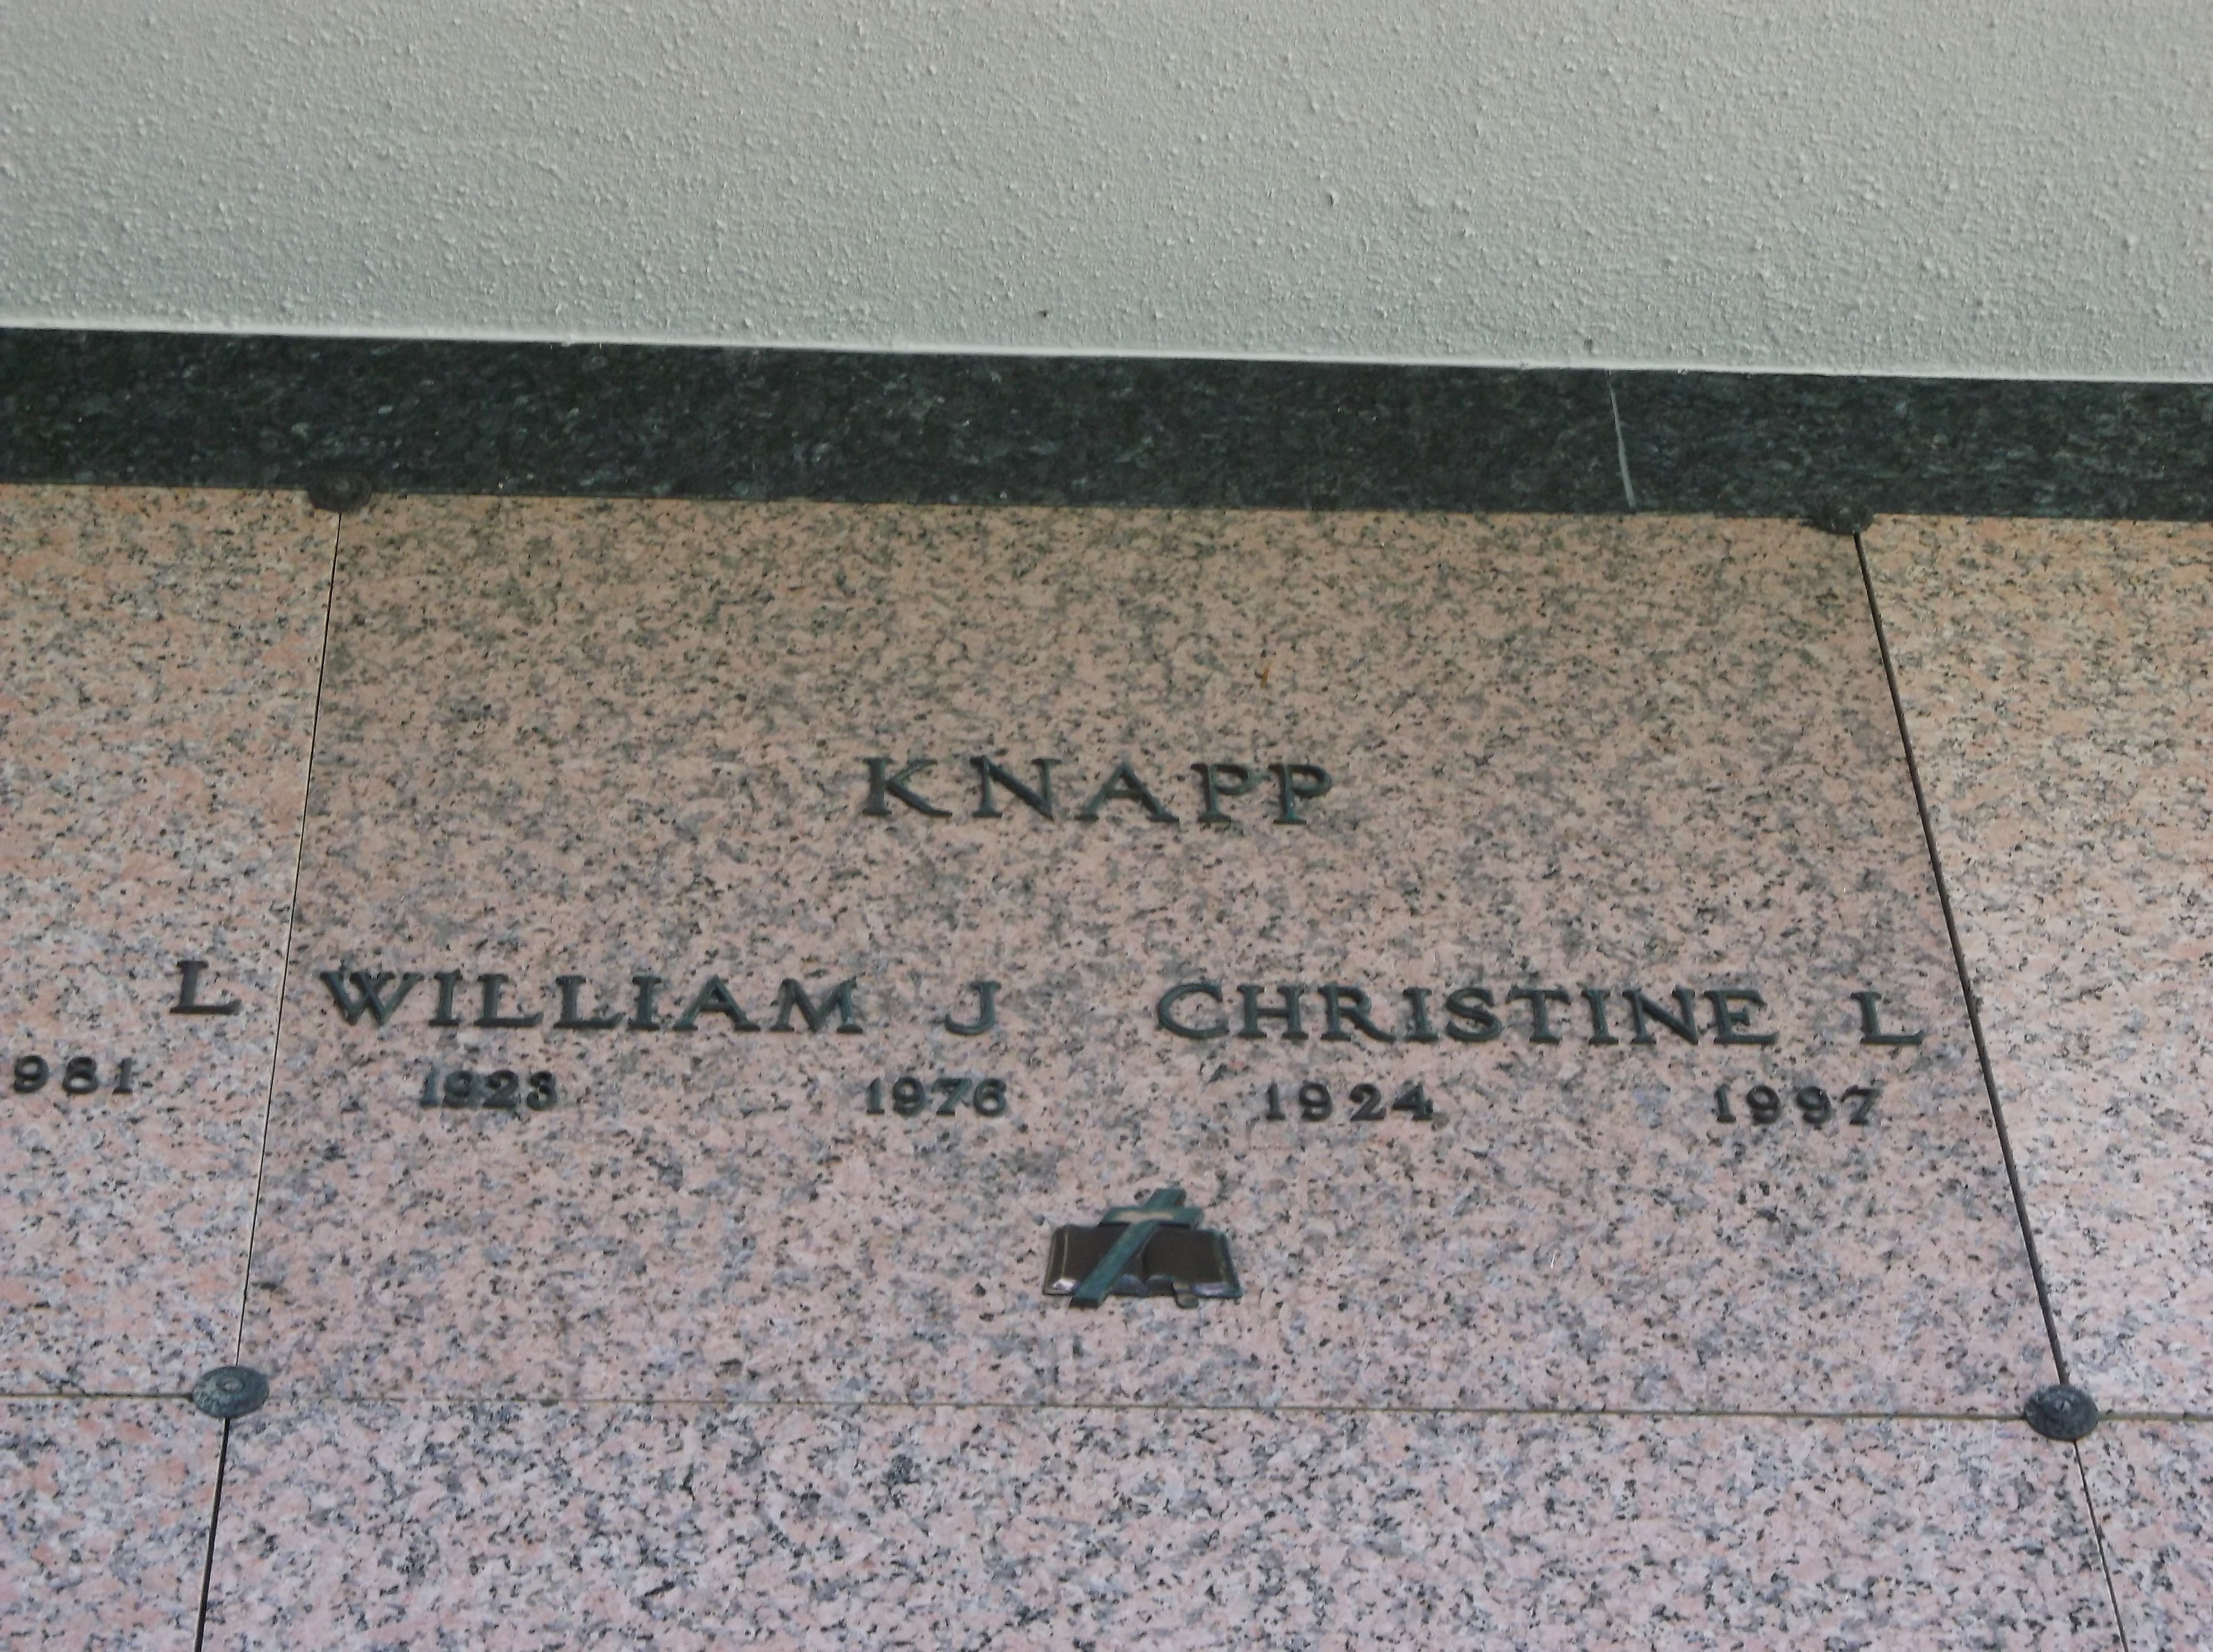 William J Knapp